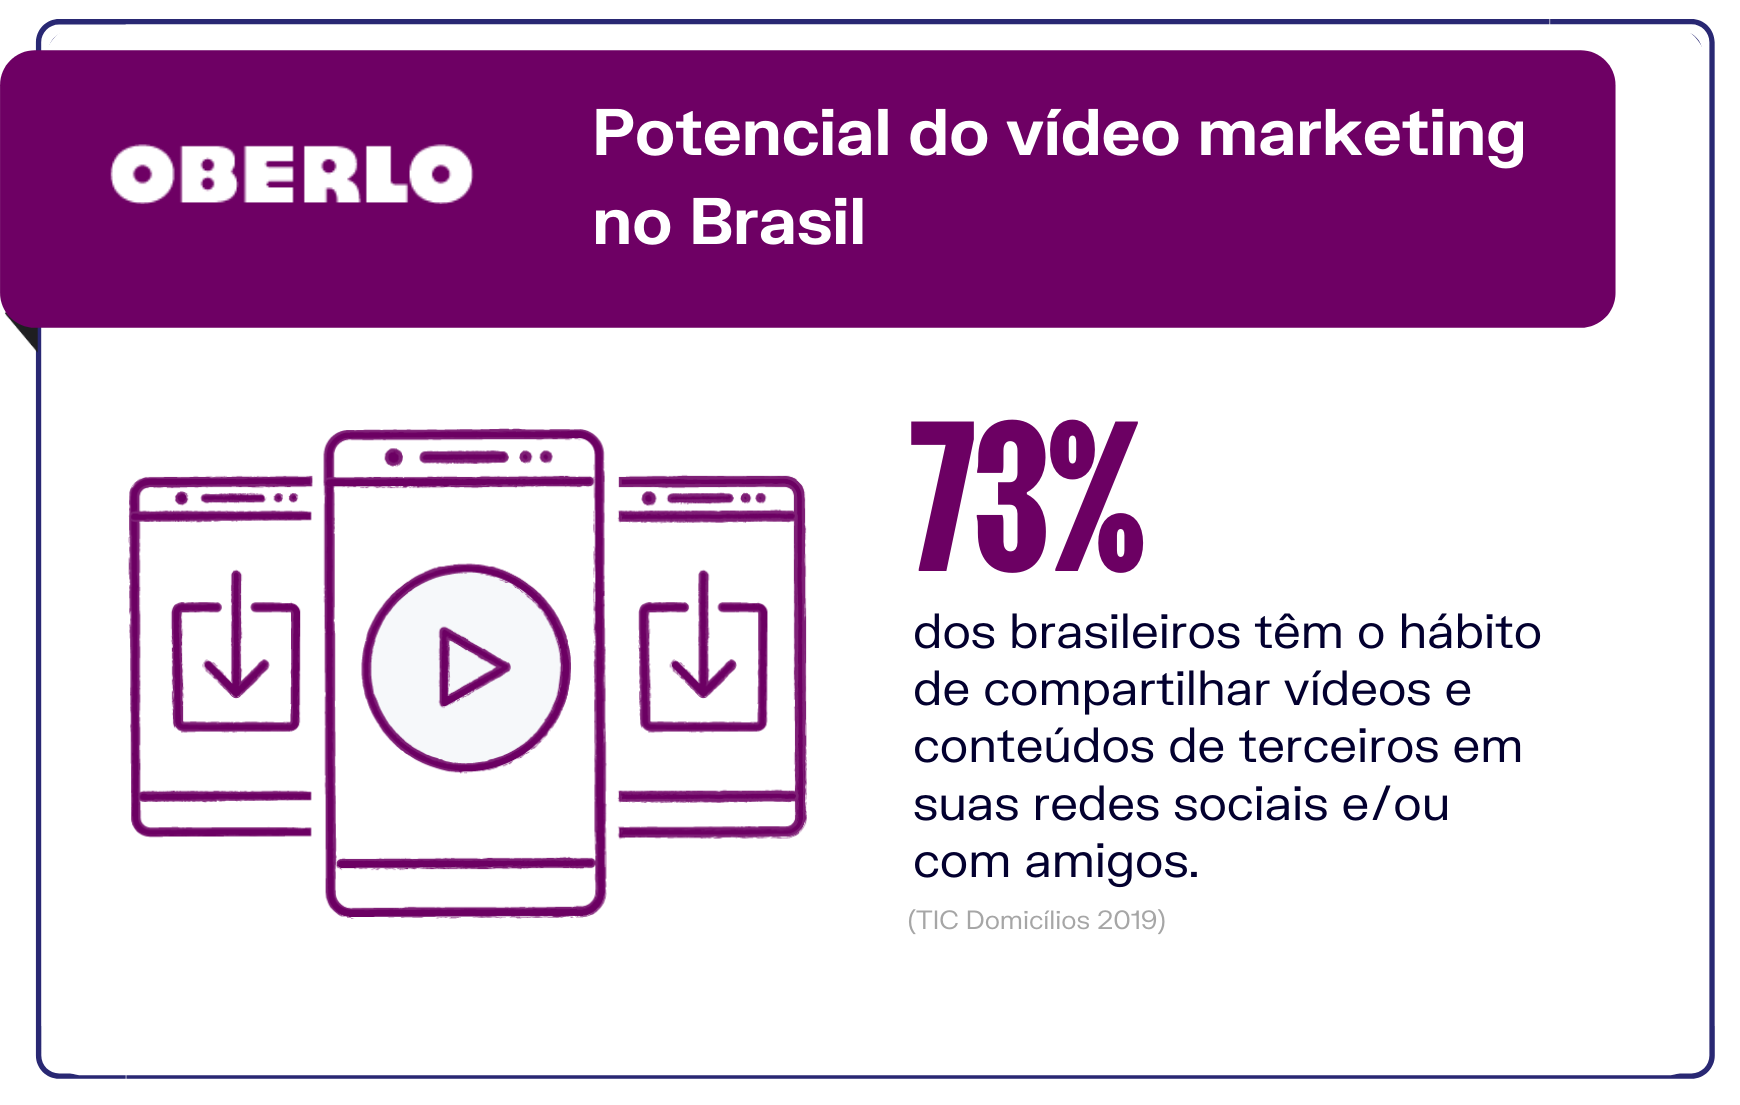 Novas oportunidades de vídeo marketing: consumo médio de conteúdos em vídeo